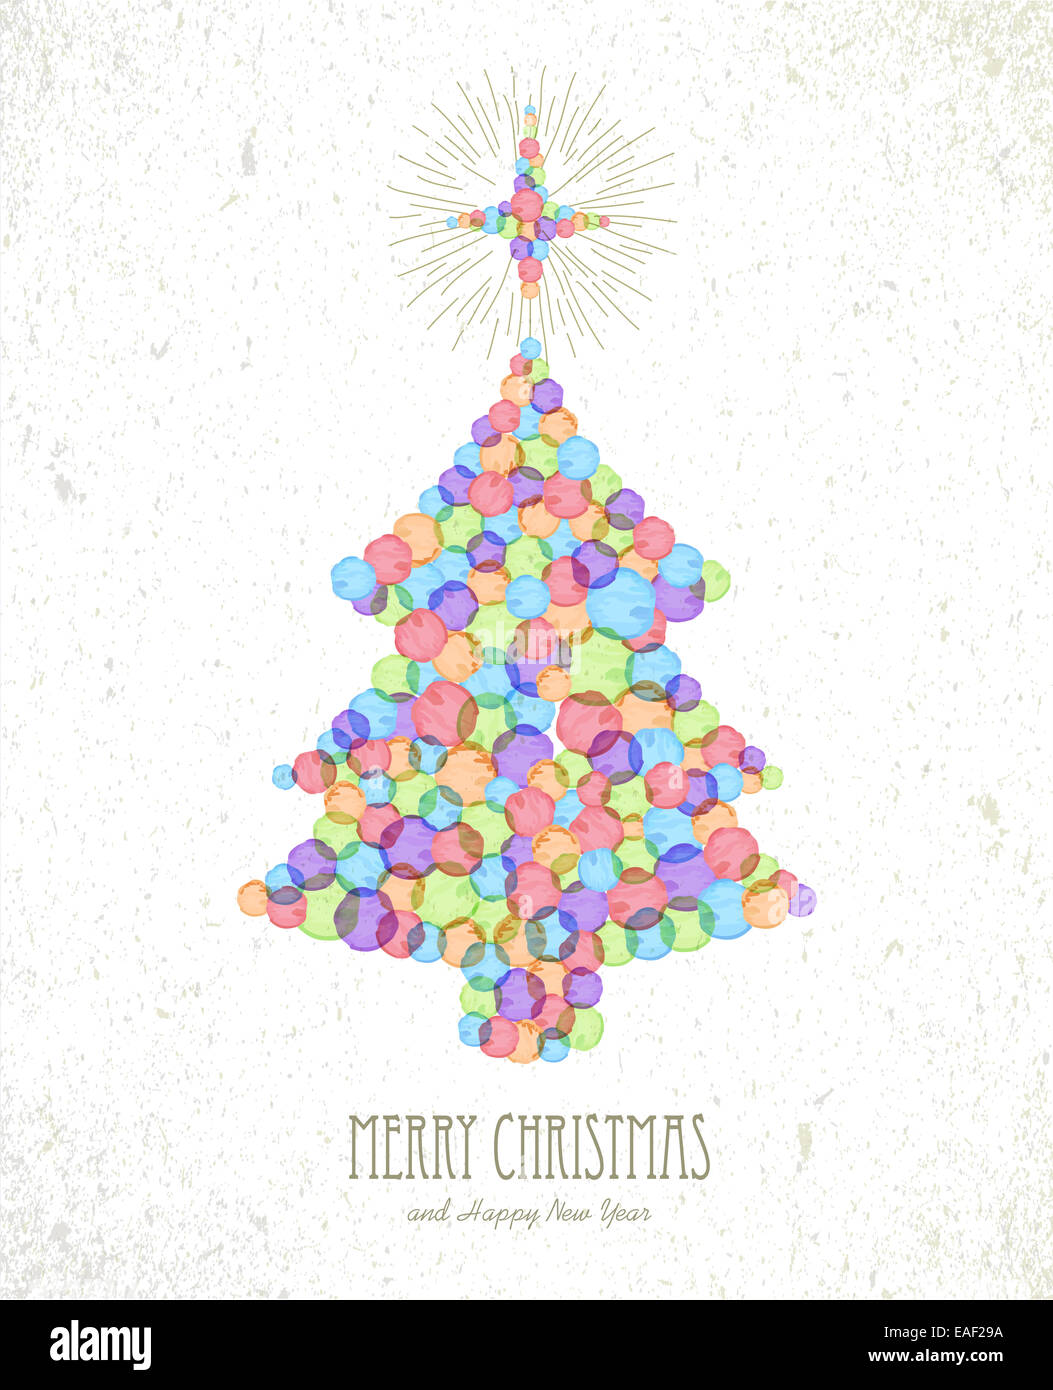 Joyeux Noël les taches d'aquarelle arbre de Noël carte de voeux forme l'arrière-plan. Fichier vectoriel EPS10 organisé en couches pour faciliter l'editi Banque D'Images